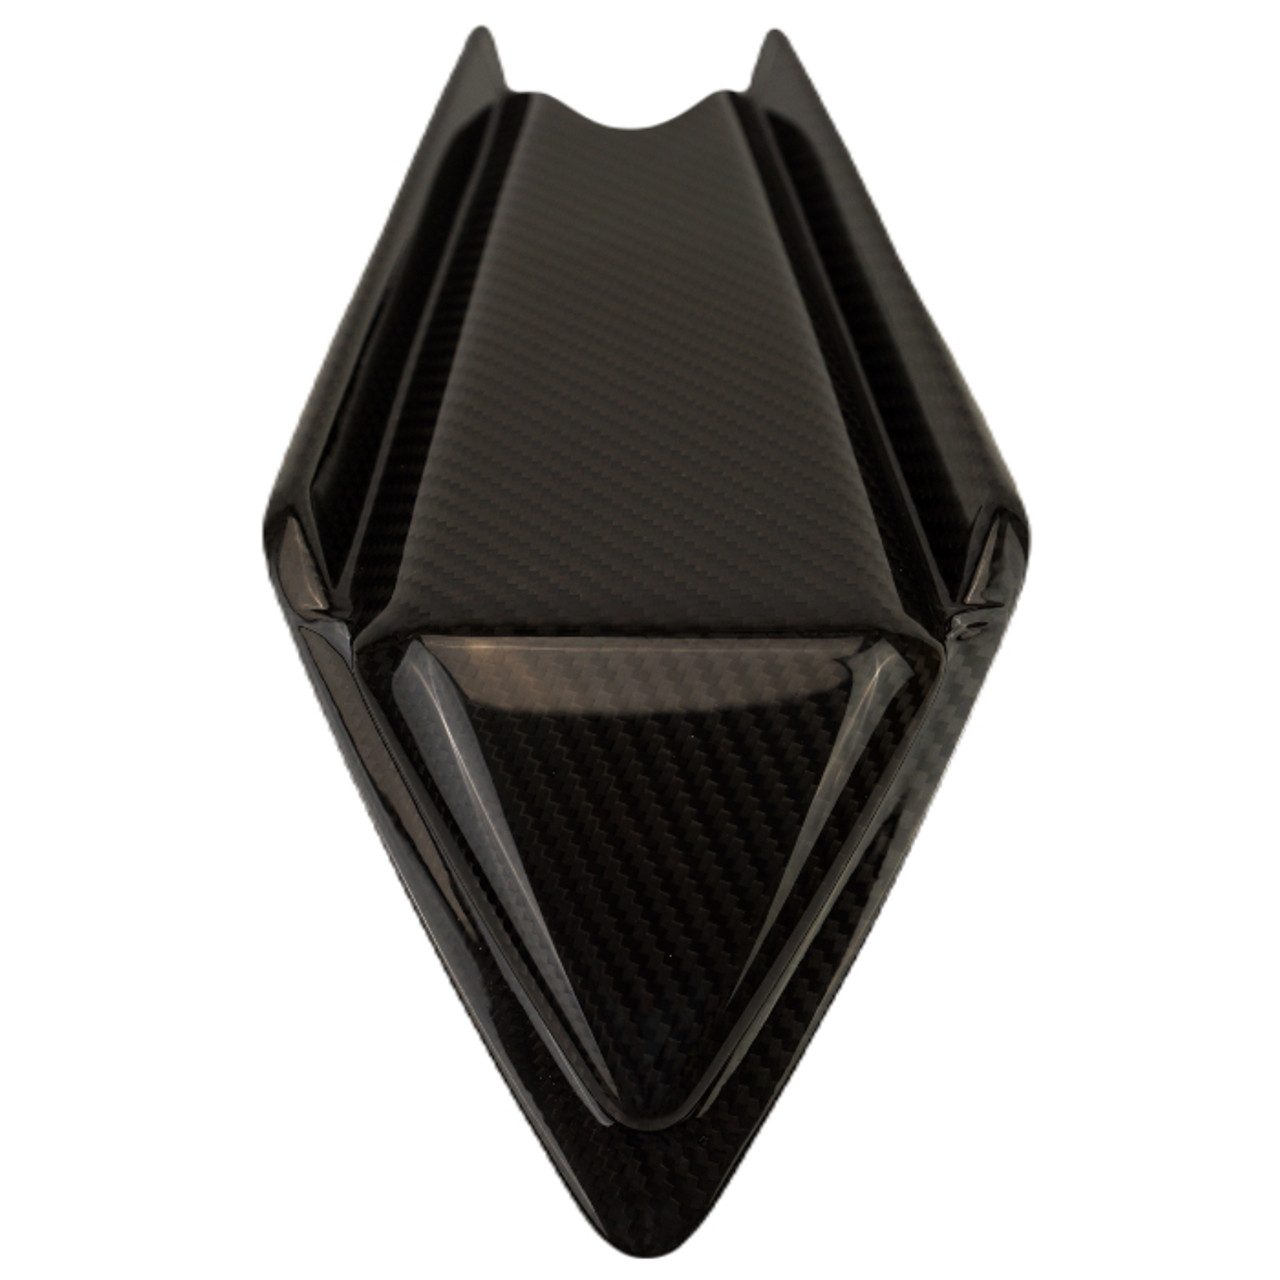 Rear Cowl in Glossy Twill Weave Carbon Fiber for Aprilia RSV4 2021+

